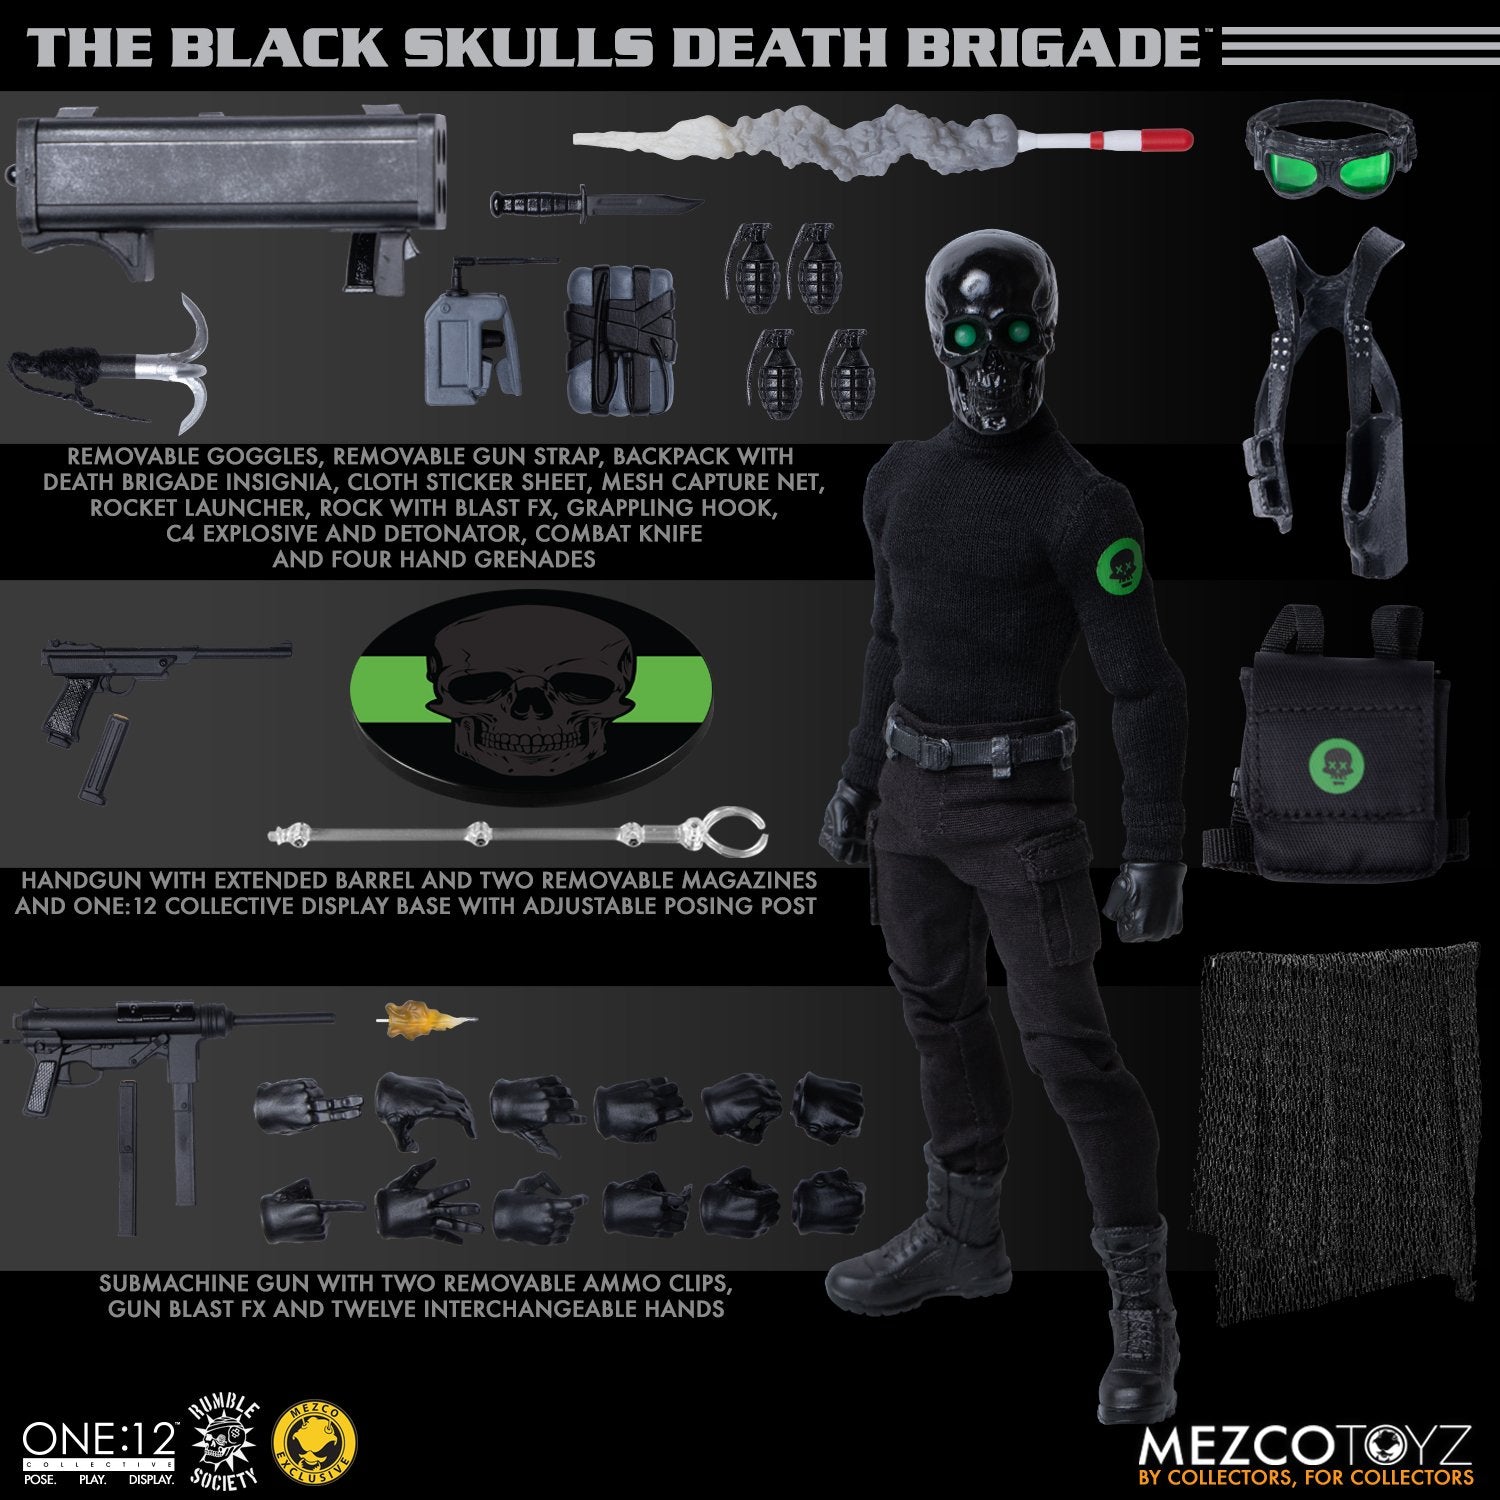 Mezco Toyz ONE:12 Black Skulls Death Brigade Action Figure Exclusive